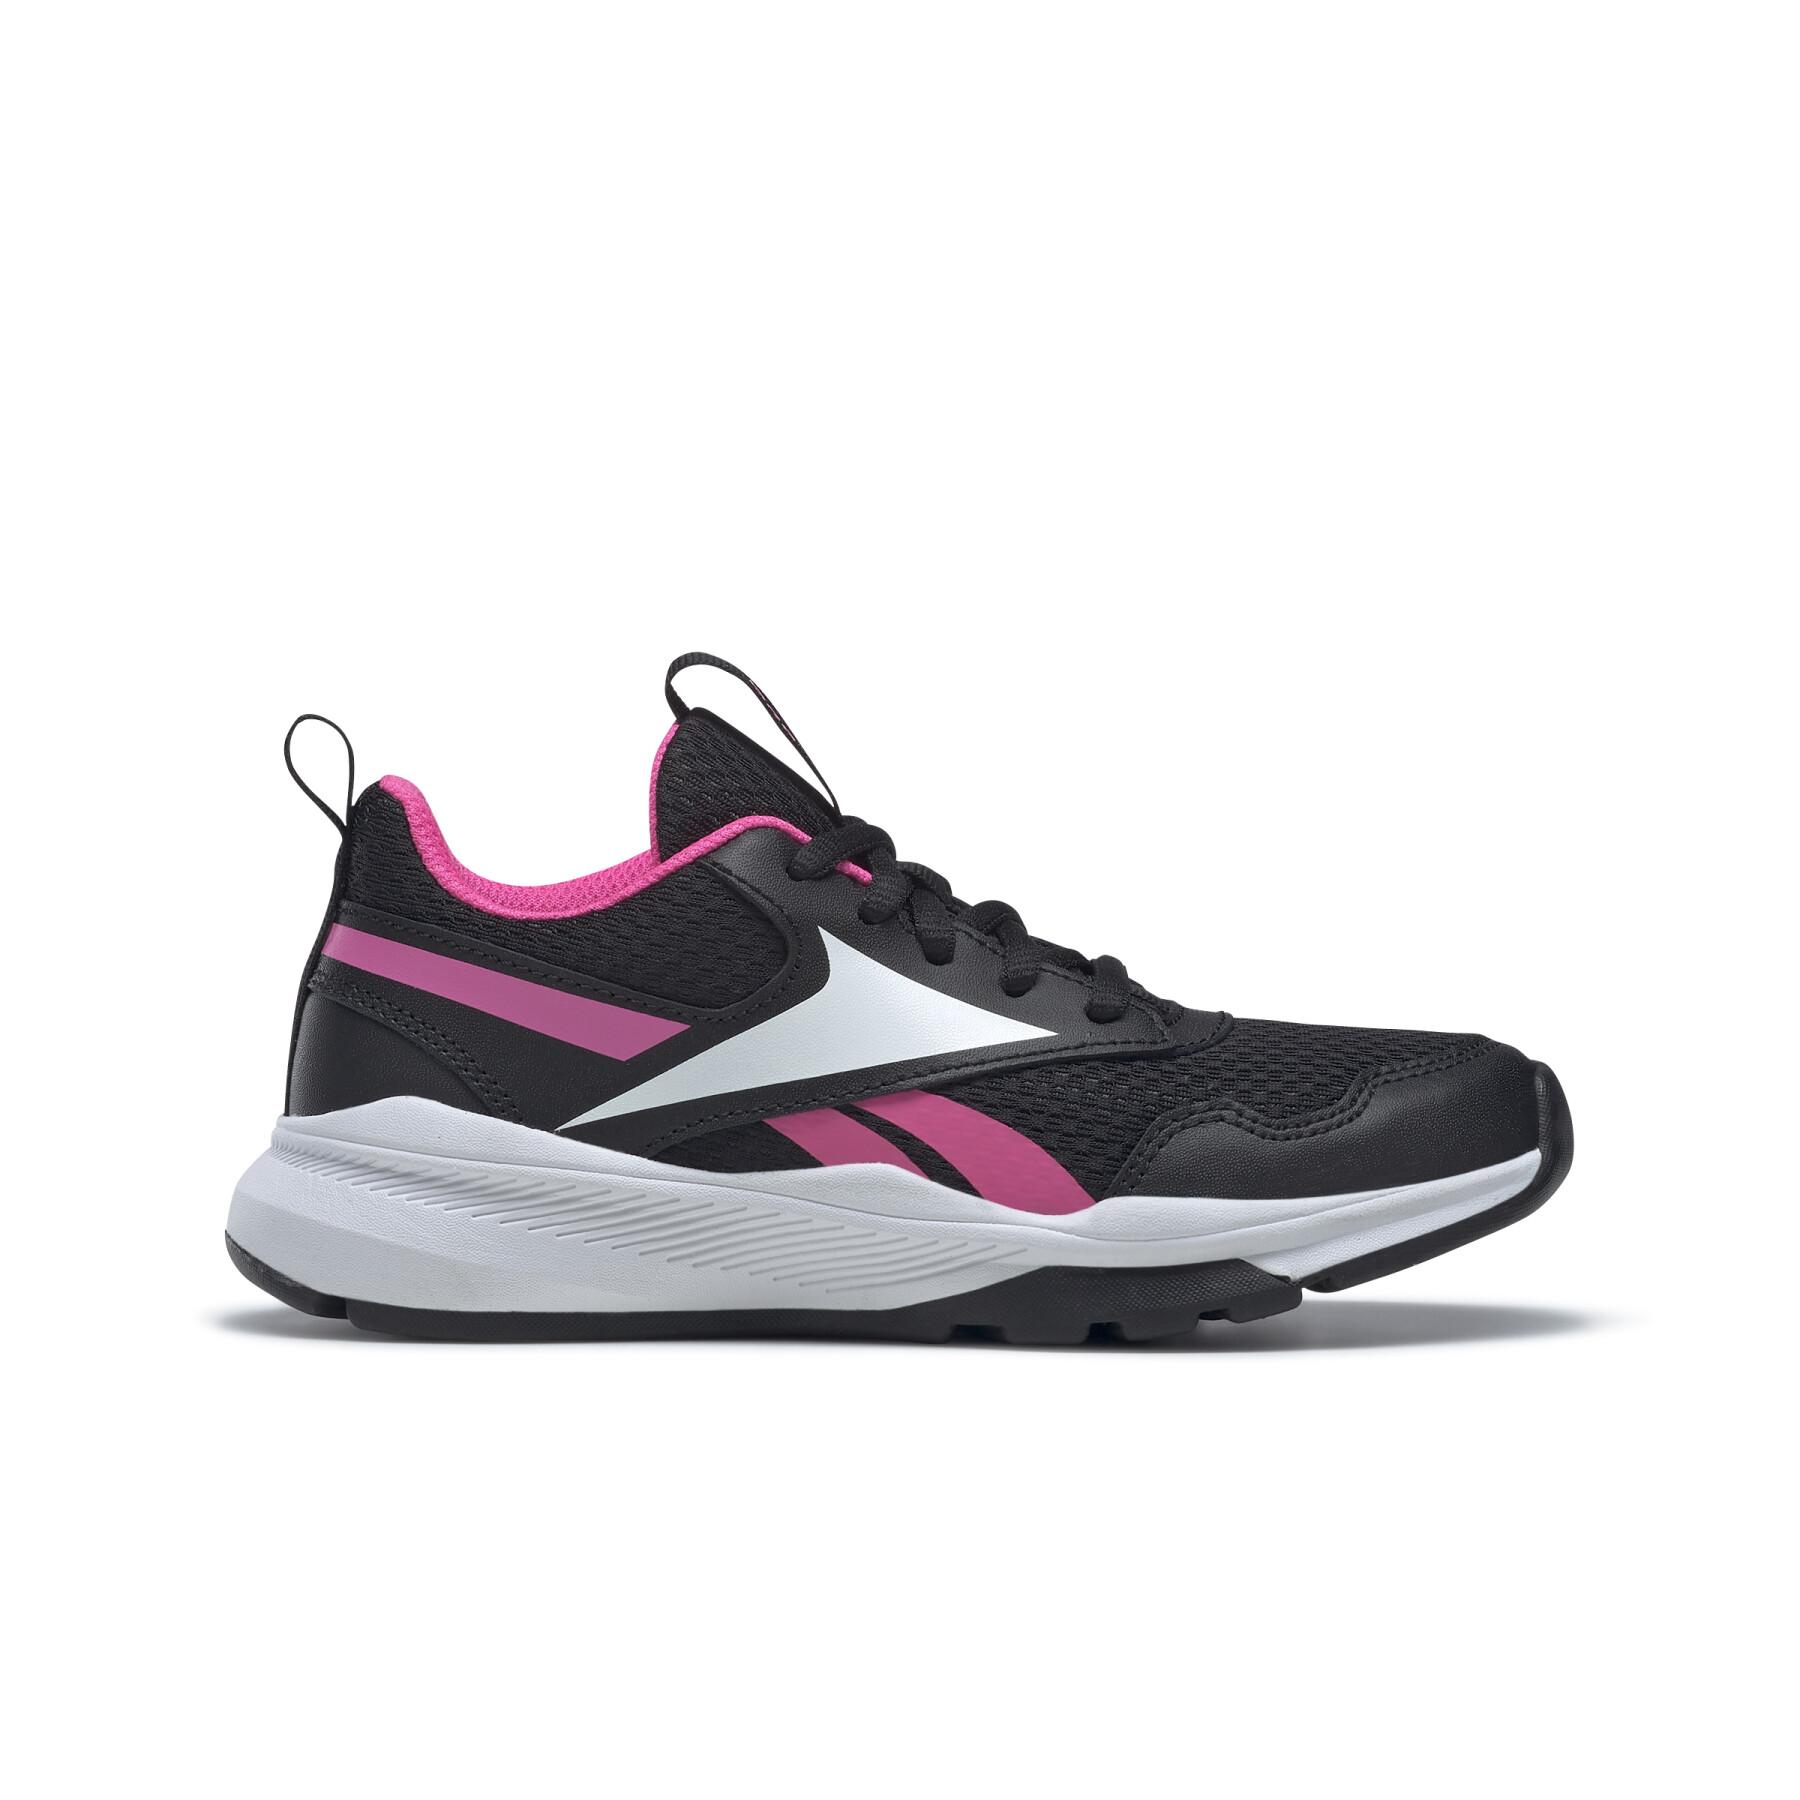 Chaussures de running fille Reebok Xt Sprinter 2